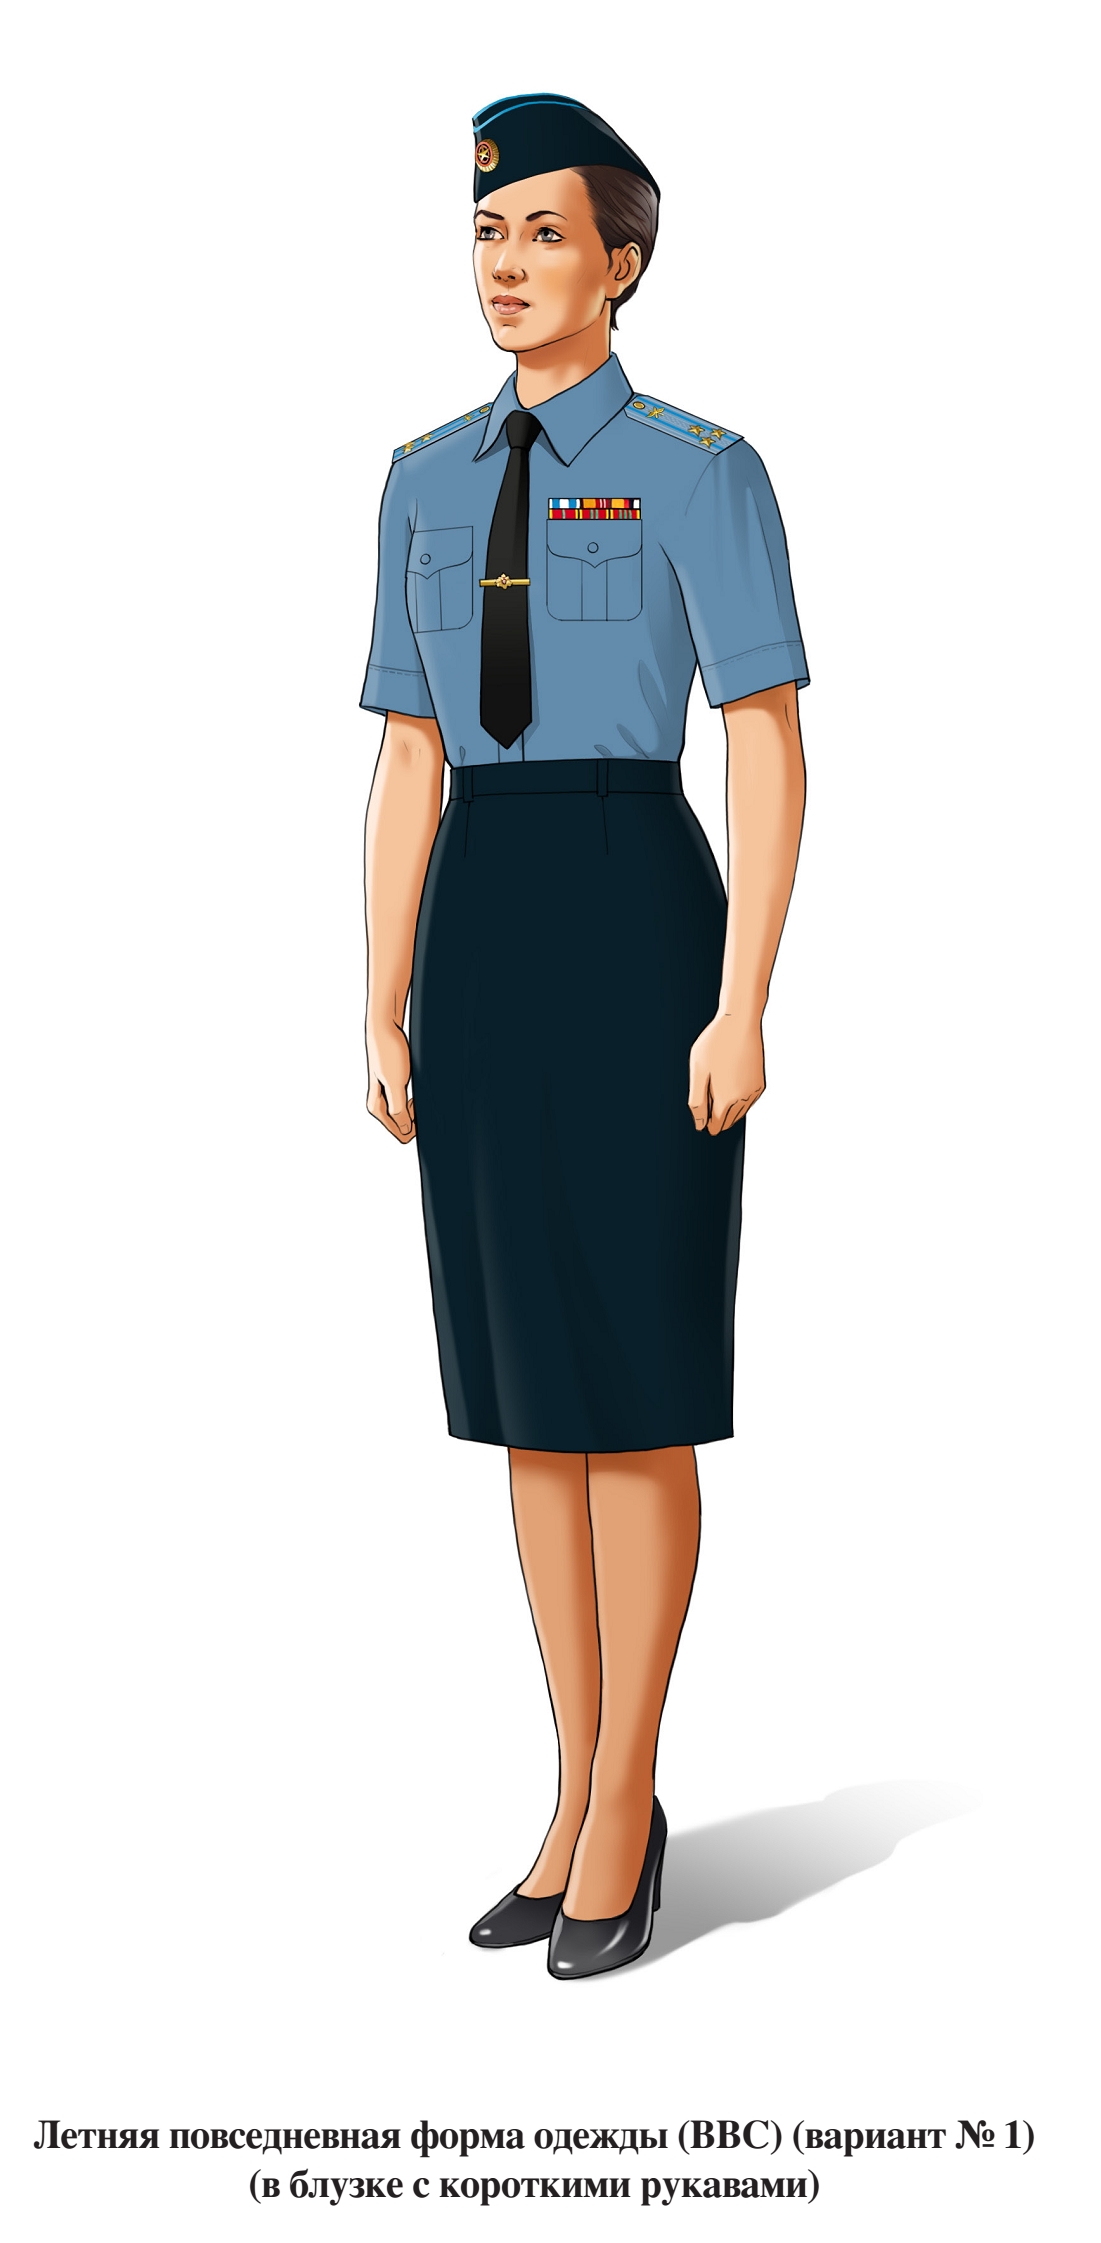 Летняя повседневная форма военнослужащих женского пола ВВС, в юбке и блузке с коротким рукавом